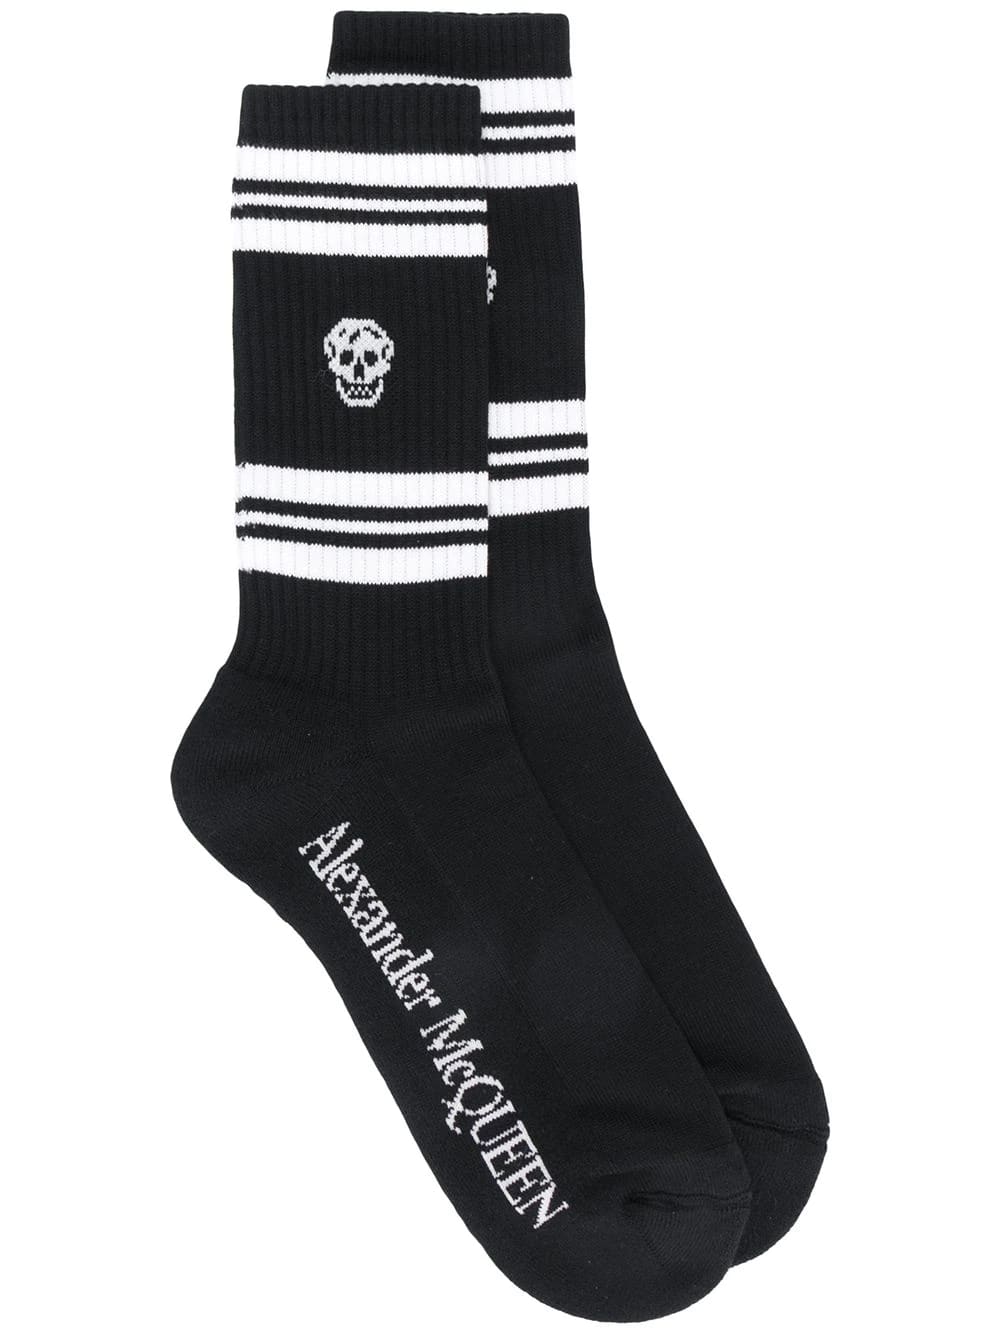 Alexander McQueen Man Black And White Skull Socks